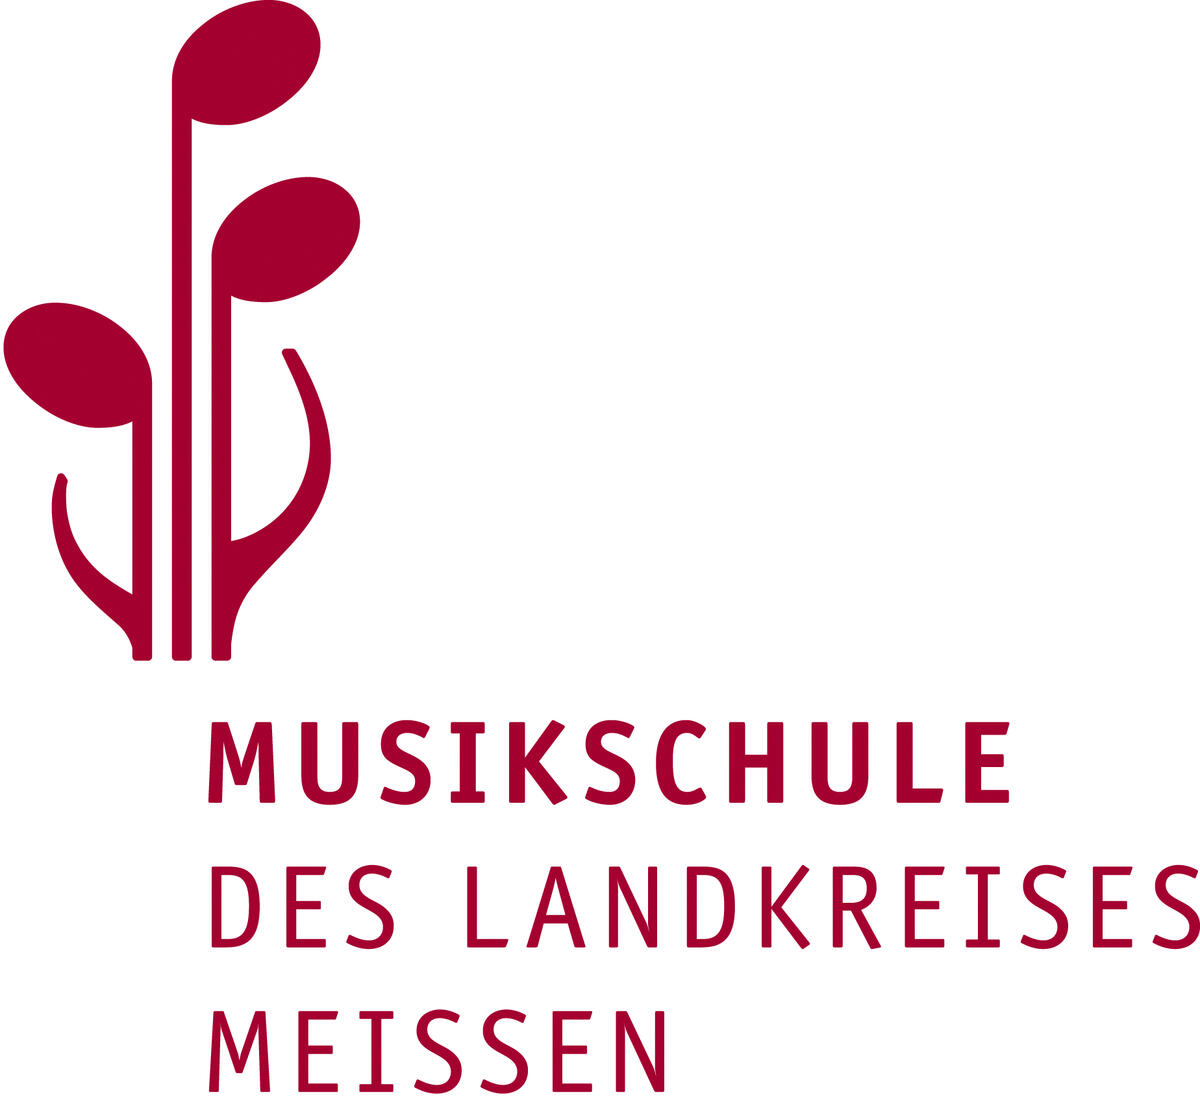 Bild vergrößern: Logo der Musikschule des Landkreises Meißen